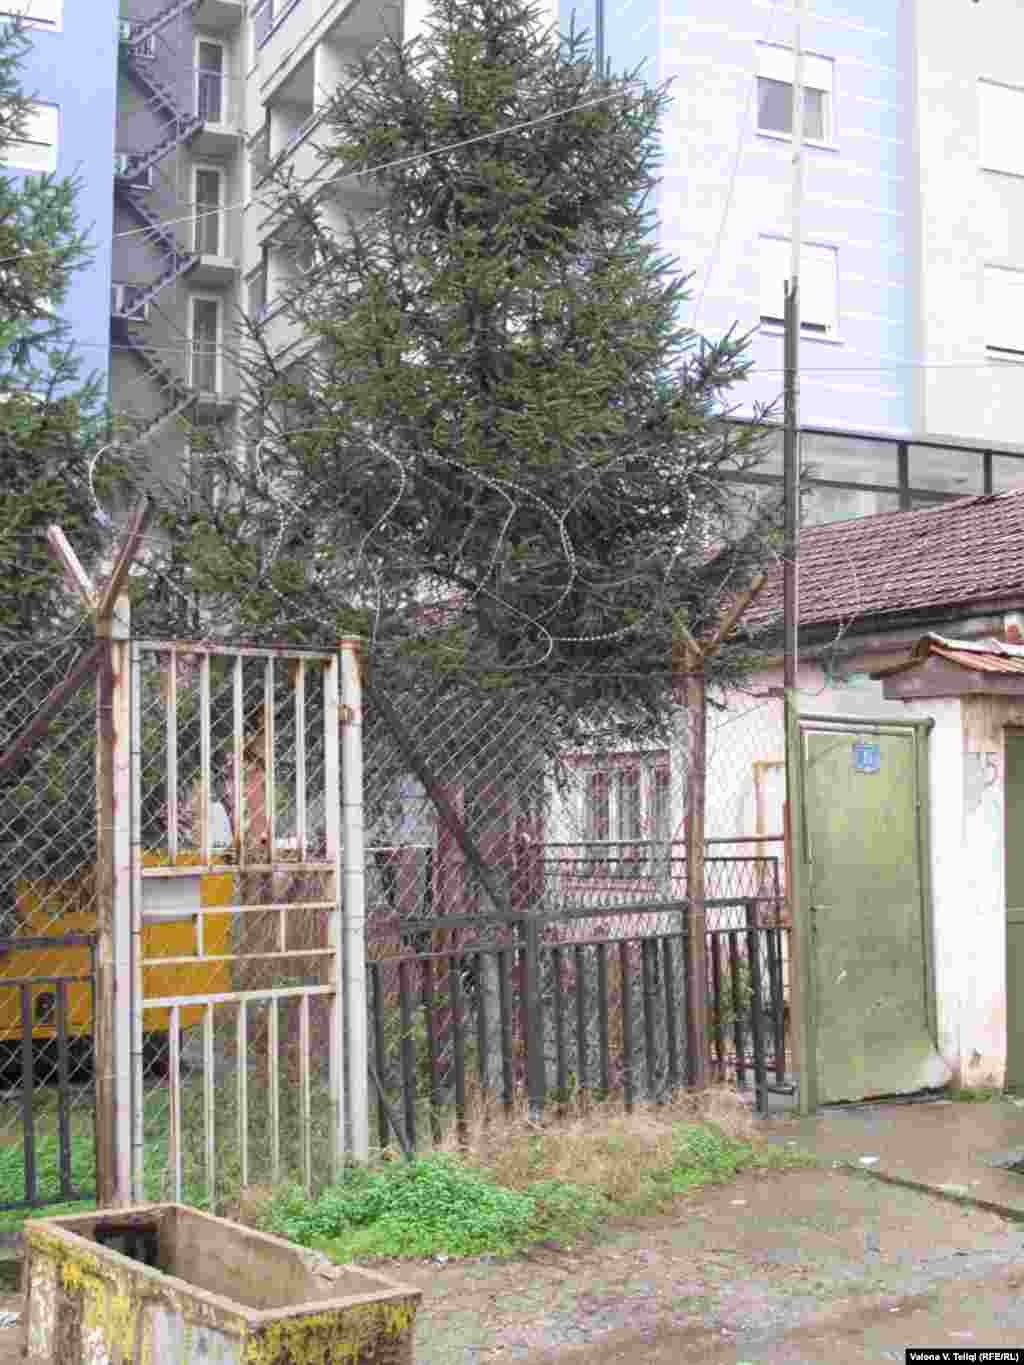 Kuća Bajrama Asllanija, osumnjičenika za terorizam sa liste FBI, koji slobodno živi u Mitrovici, 26. novembar 2010. - Foto: Valona Teliqi